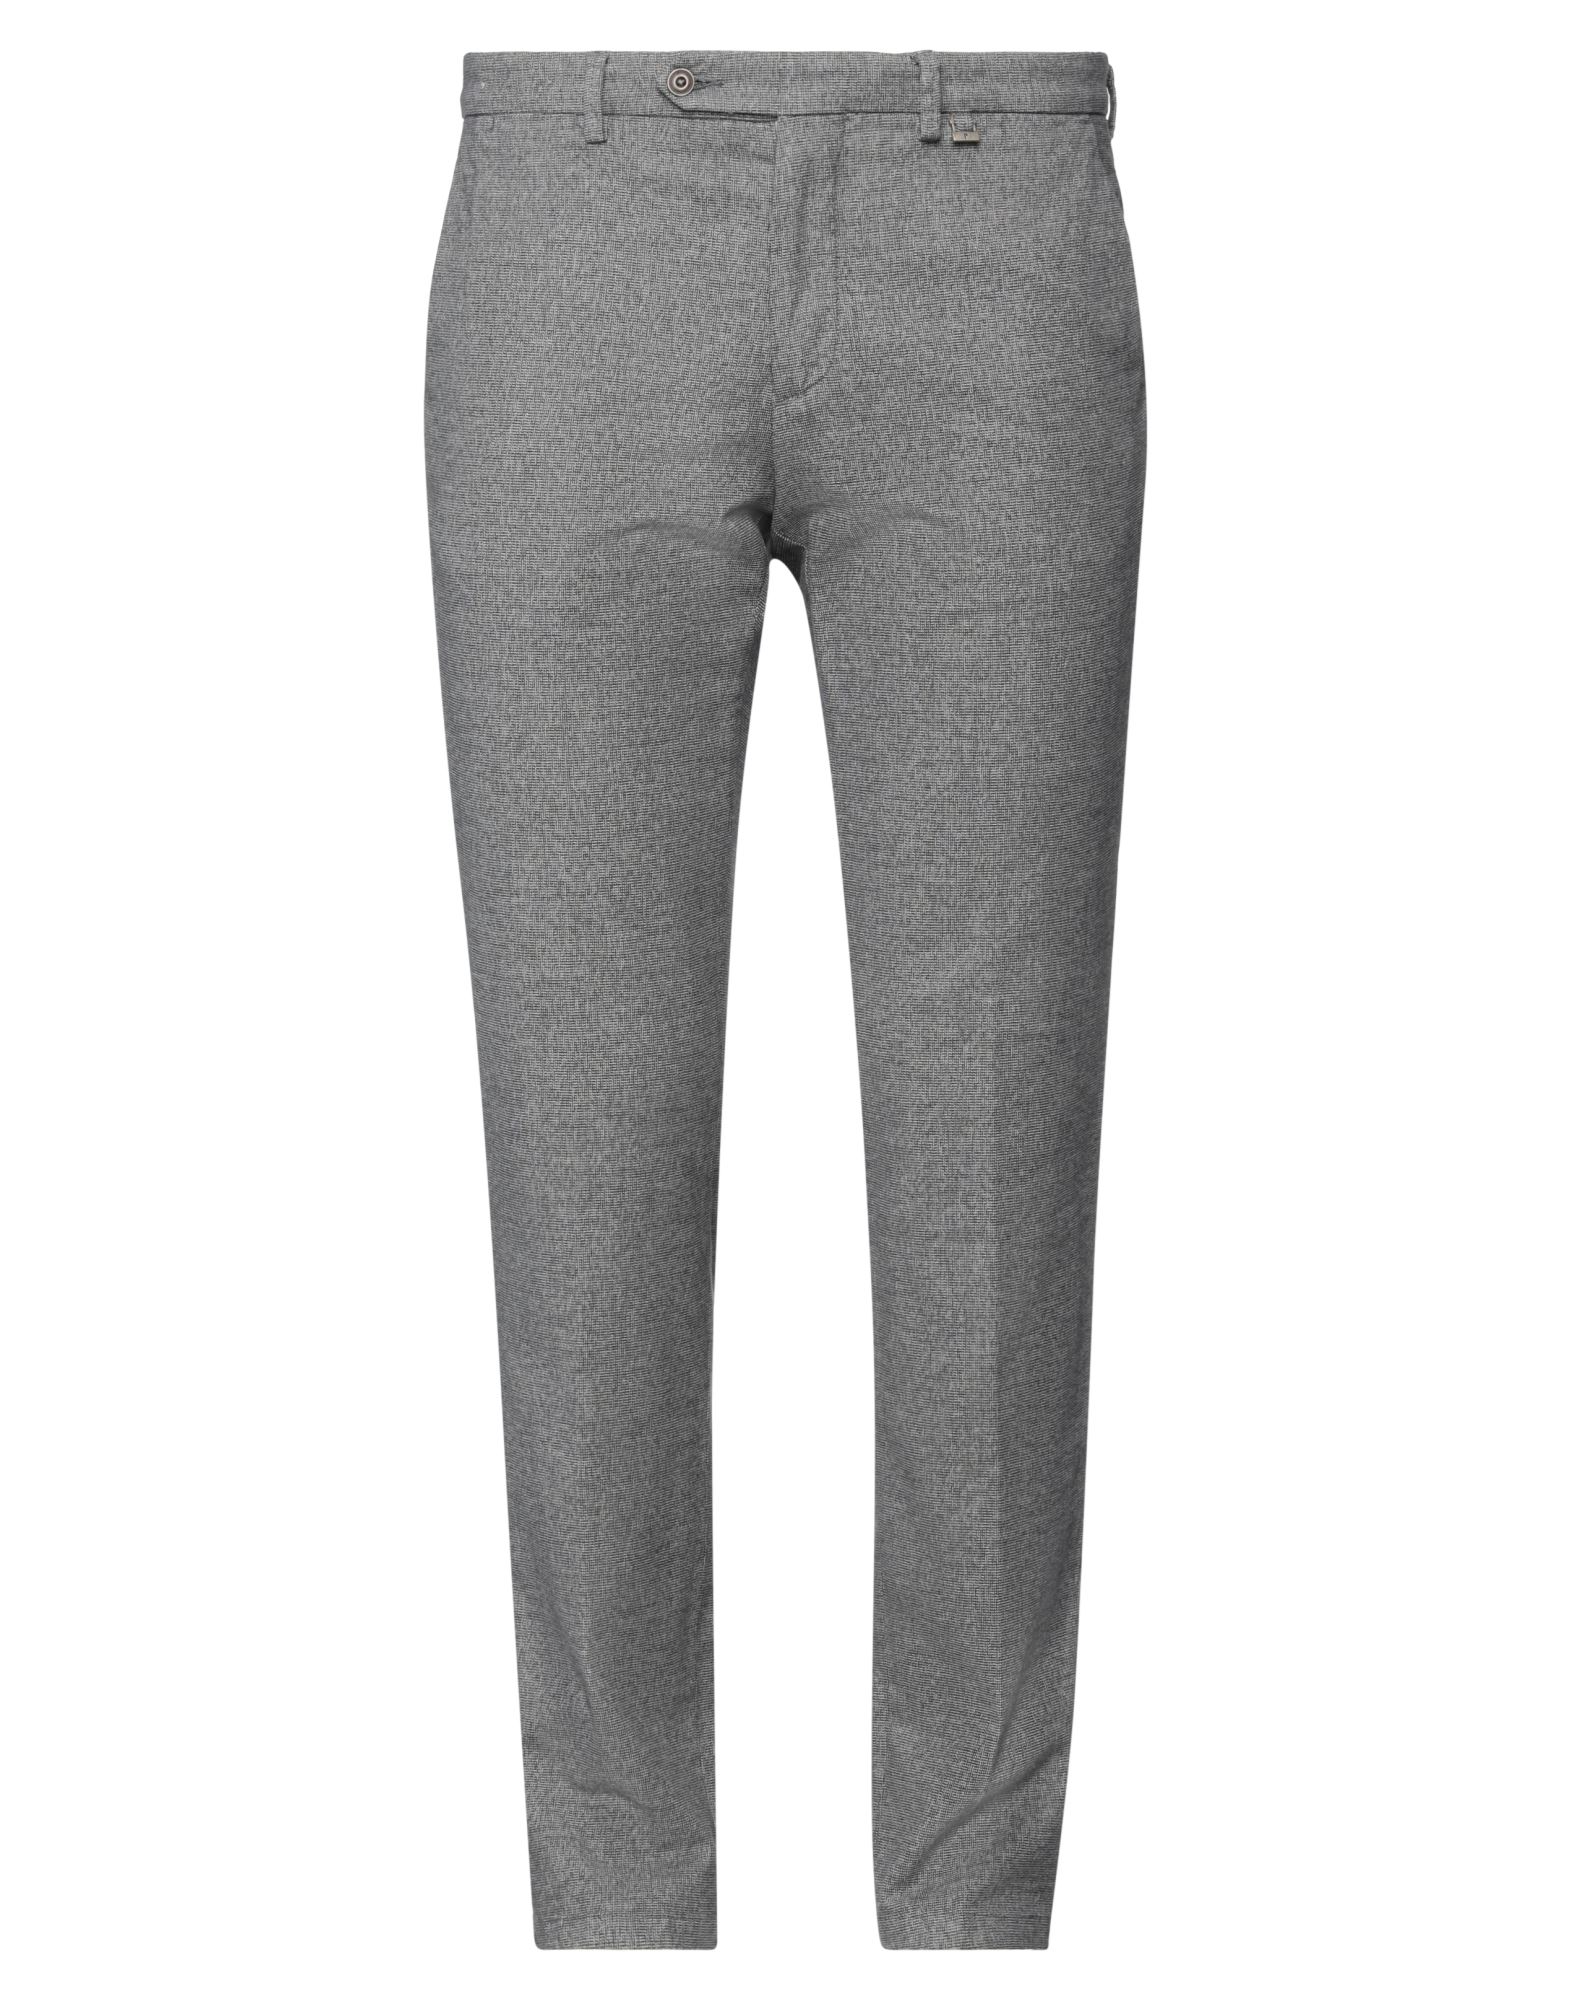 Paoloni Man Pants Grey Size 44 Cotton, Elastane